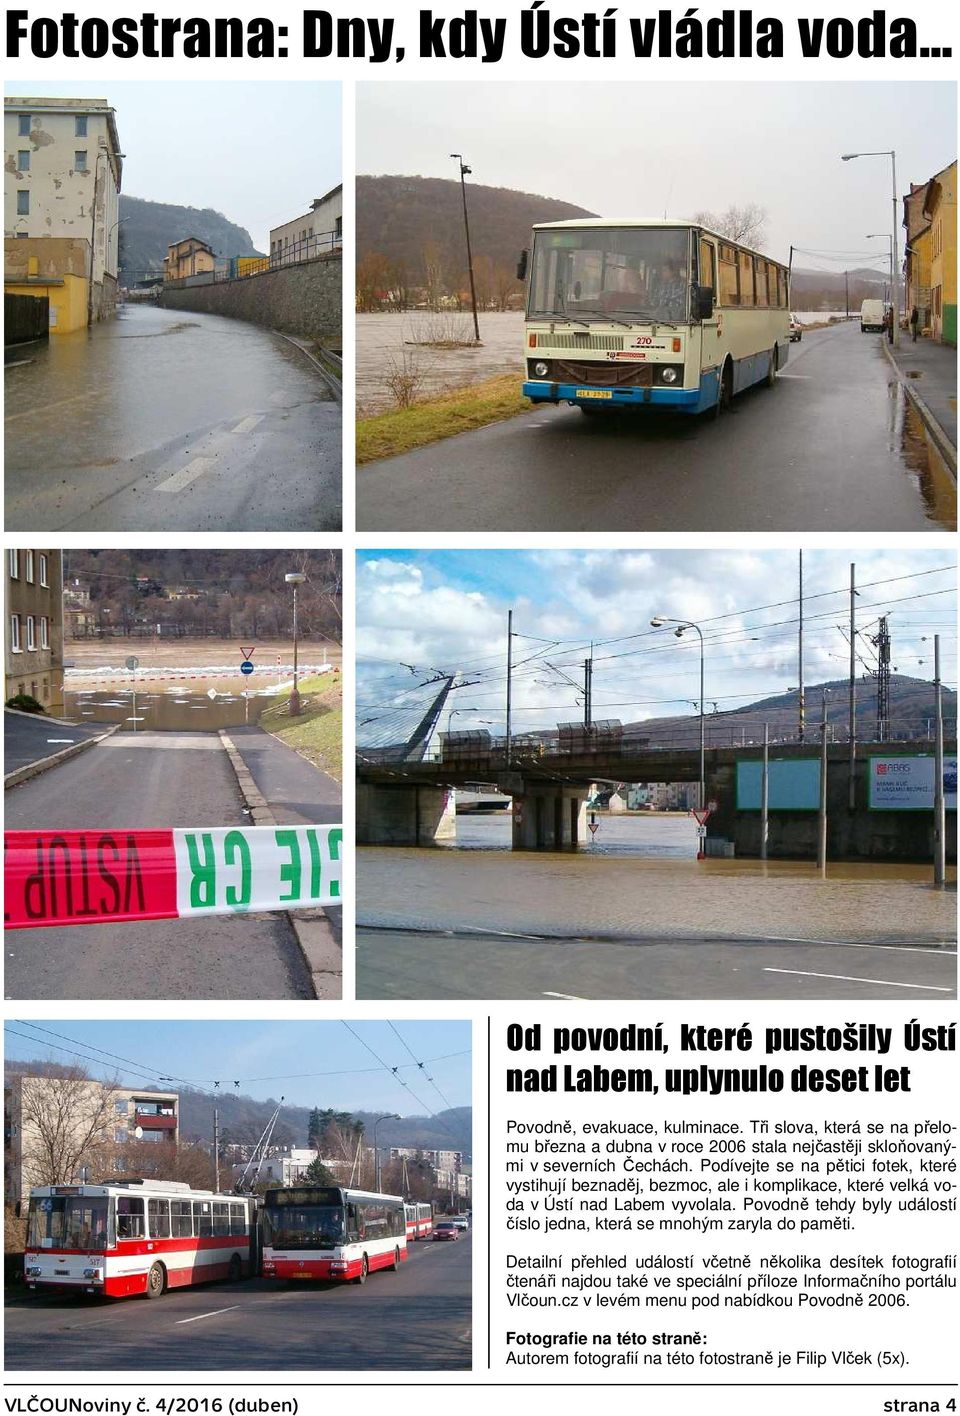 Podívejte se na pětici fotek, které vystihují beznaděj, bezmoc, ale i komplikace, které velká voda v Ústí nad Labem vyvolala.